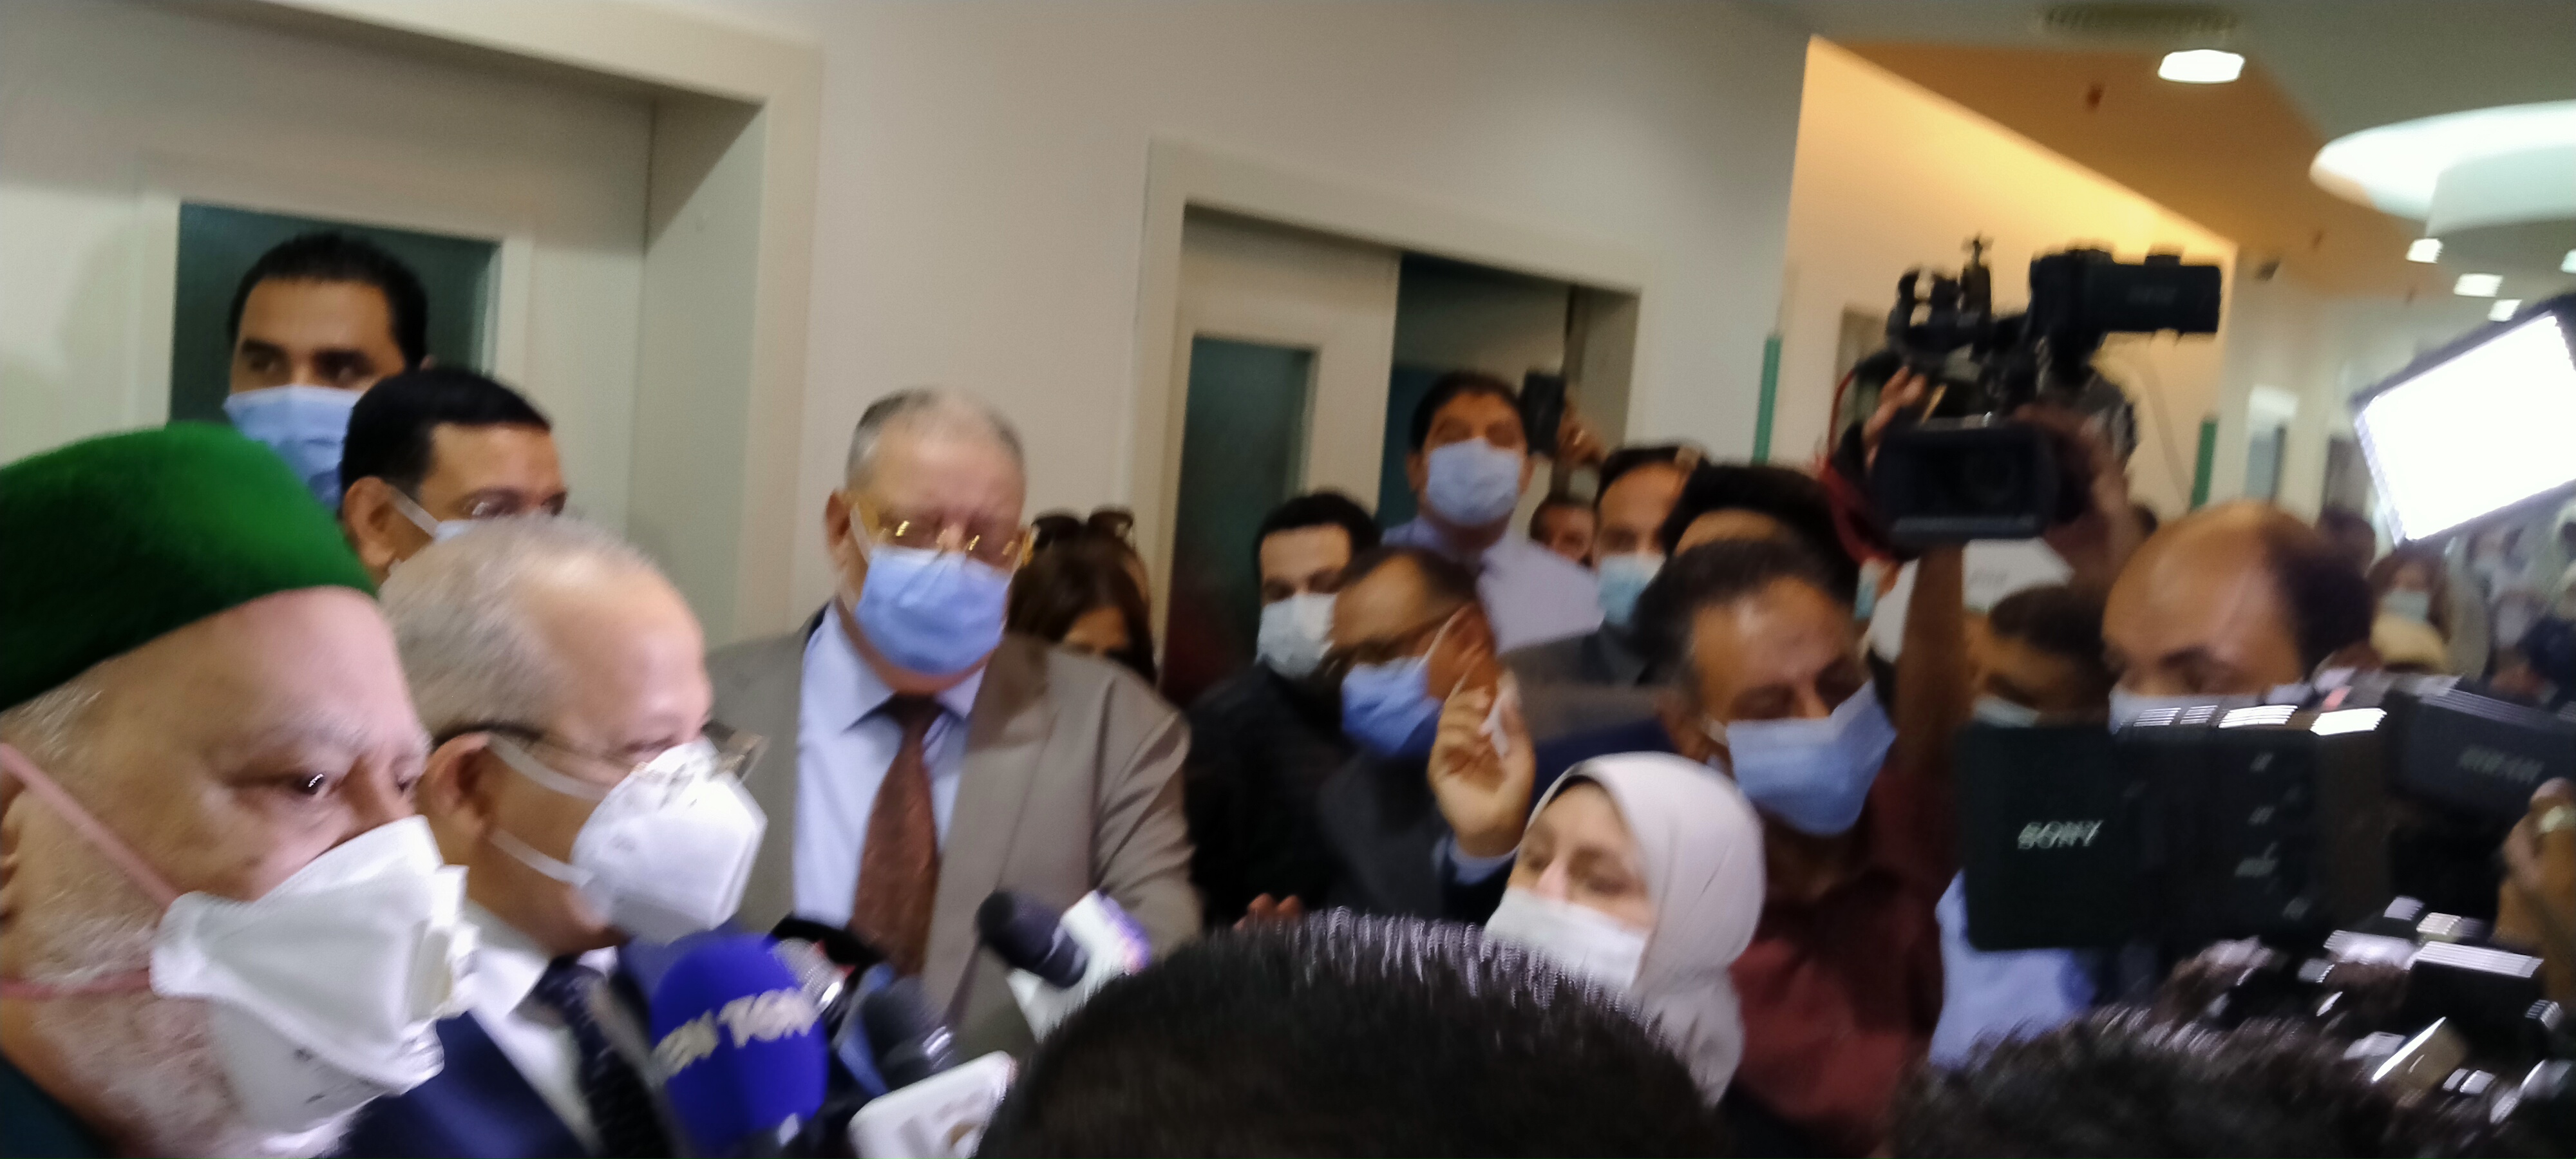 افتتاح وحدات طبية بمستشفيات أبو الريش المنيرة واليابانى (6)